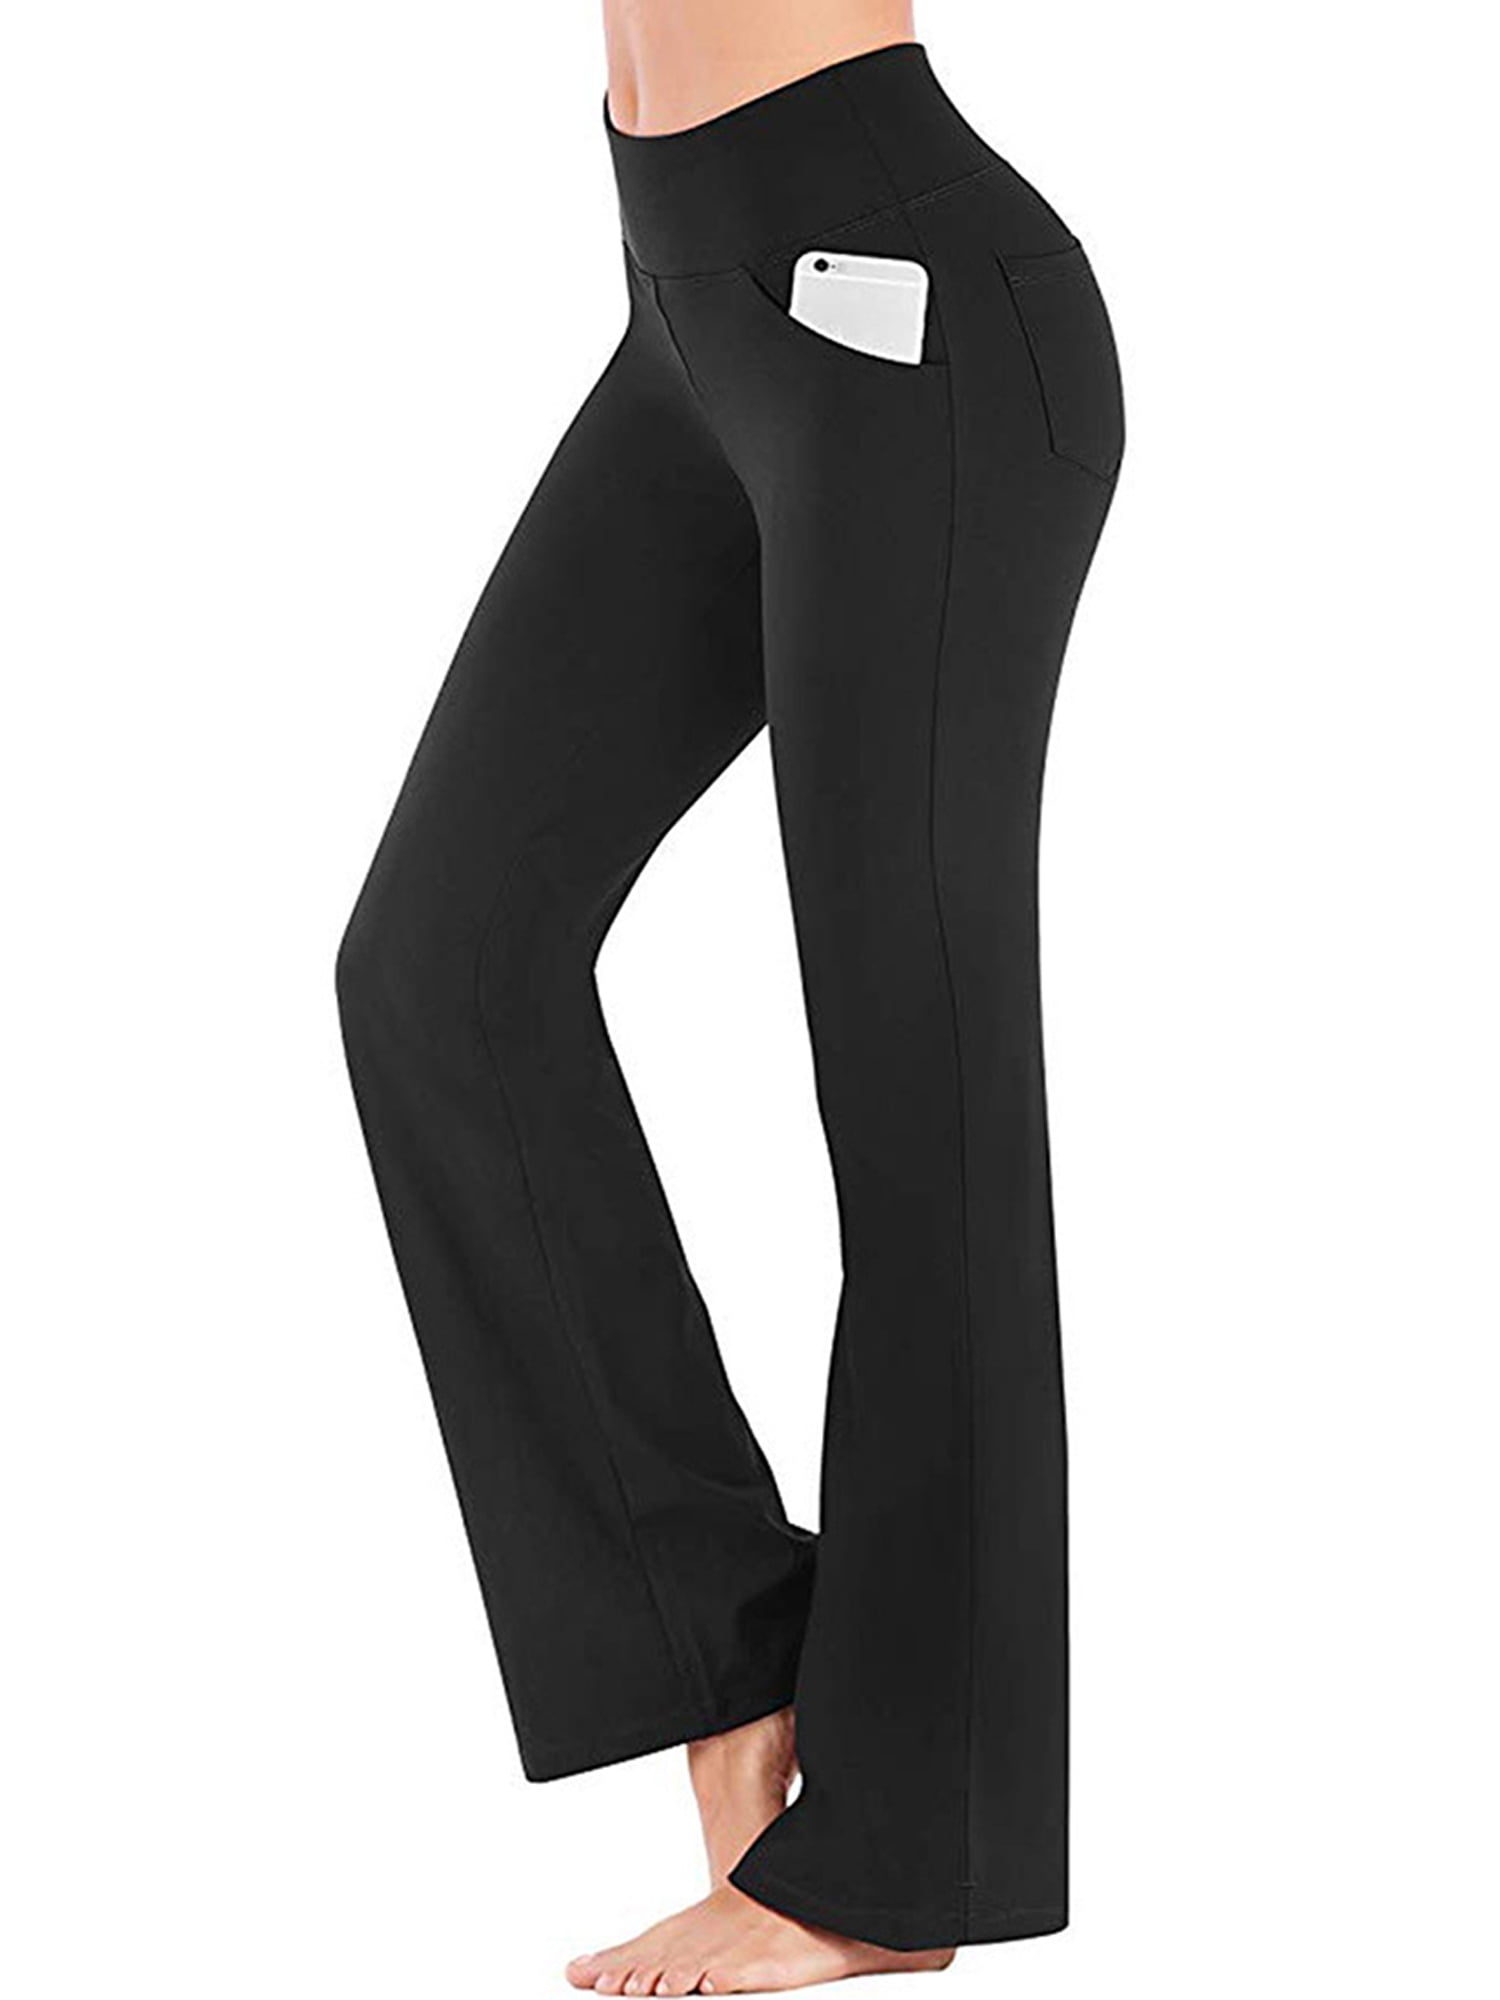 Danskin Womens Athleisure Sleek Fit Crop Yoga Pants Black- XL